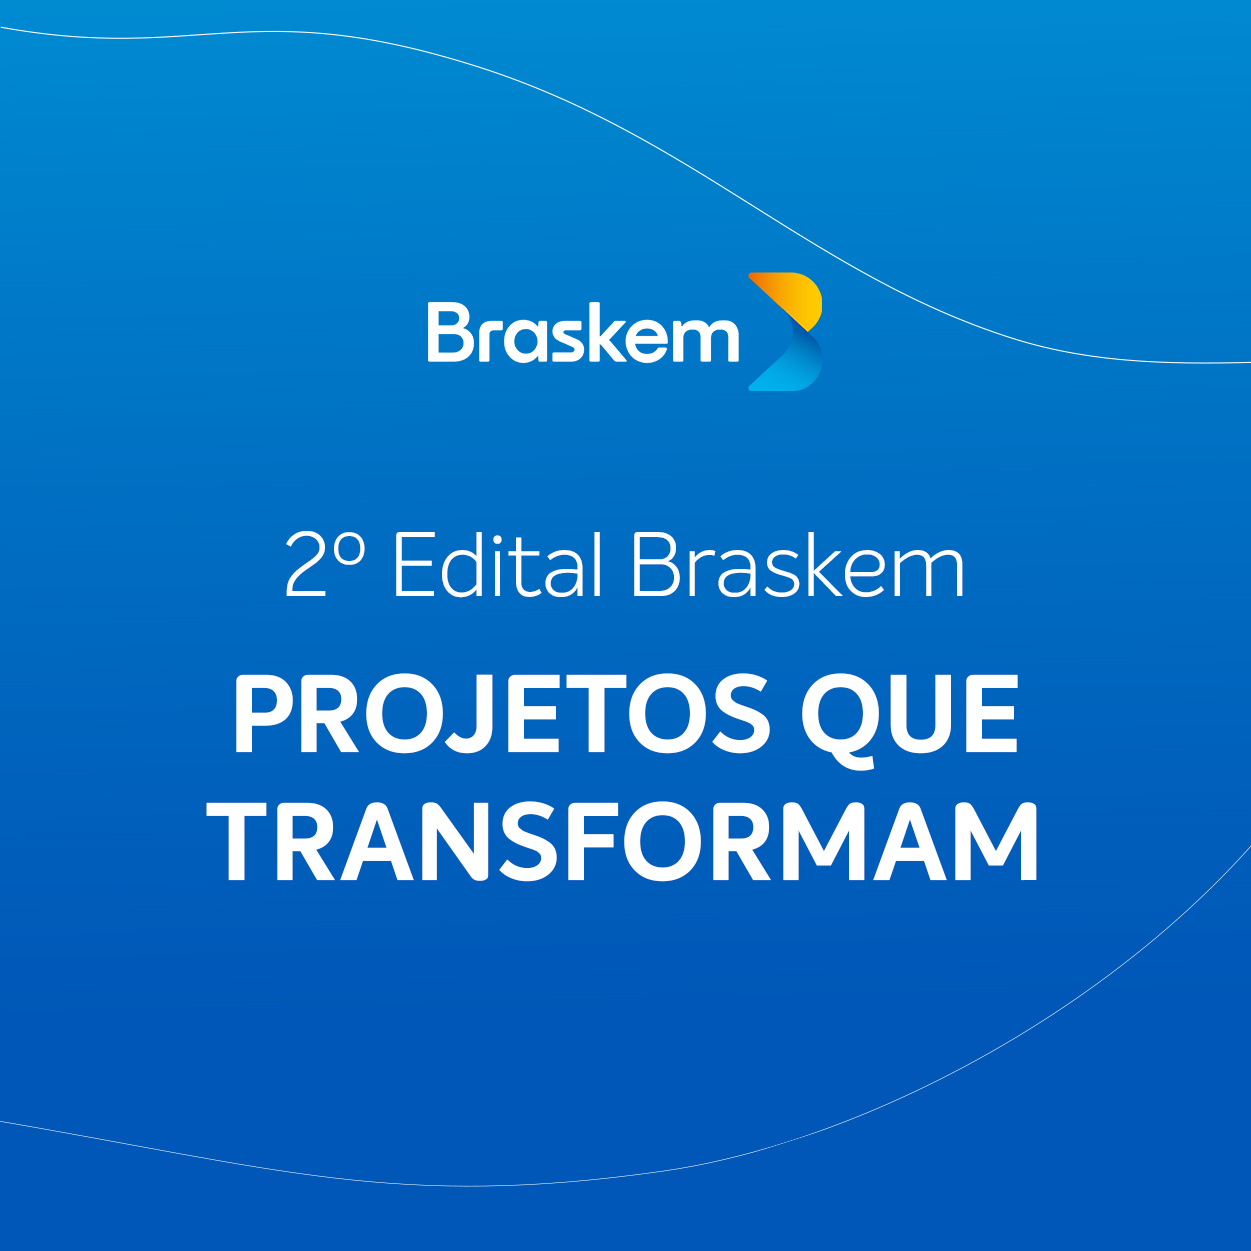 1º Edital Braskem: Projetos que Transformam